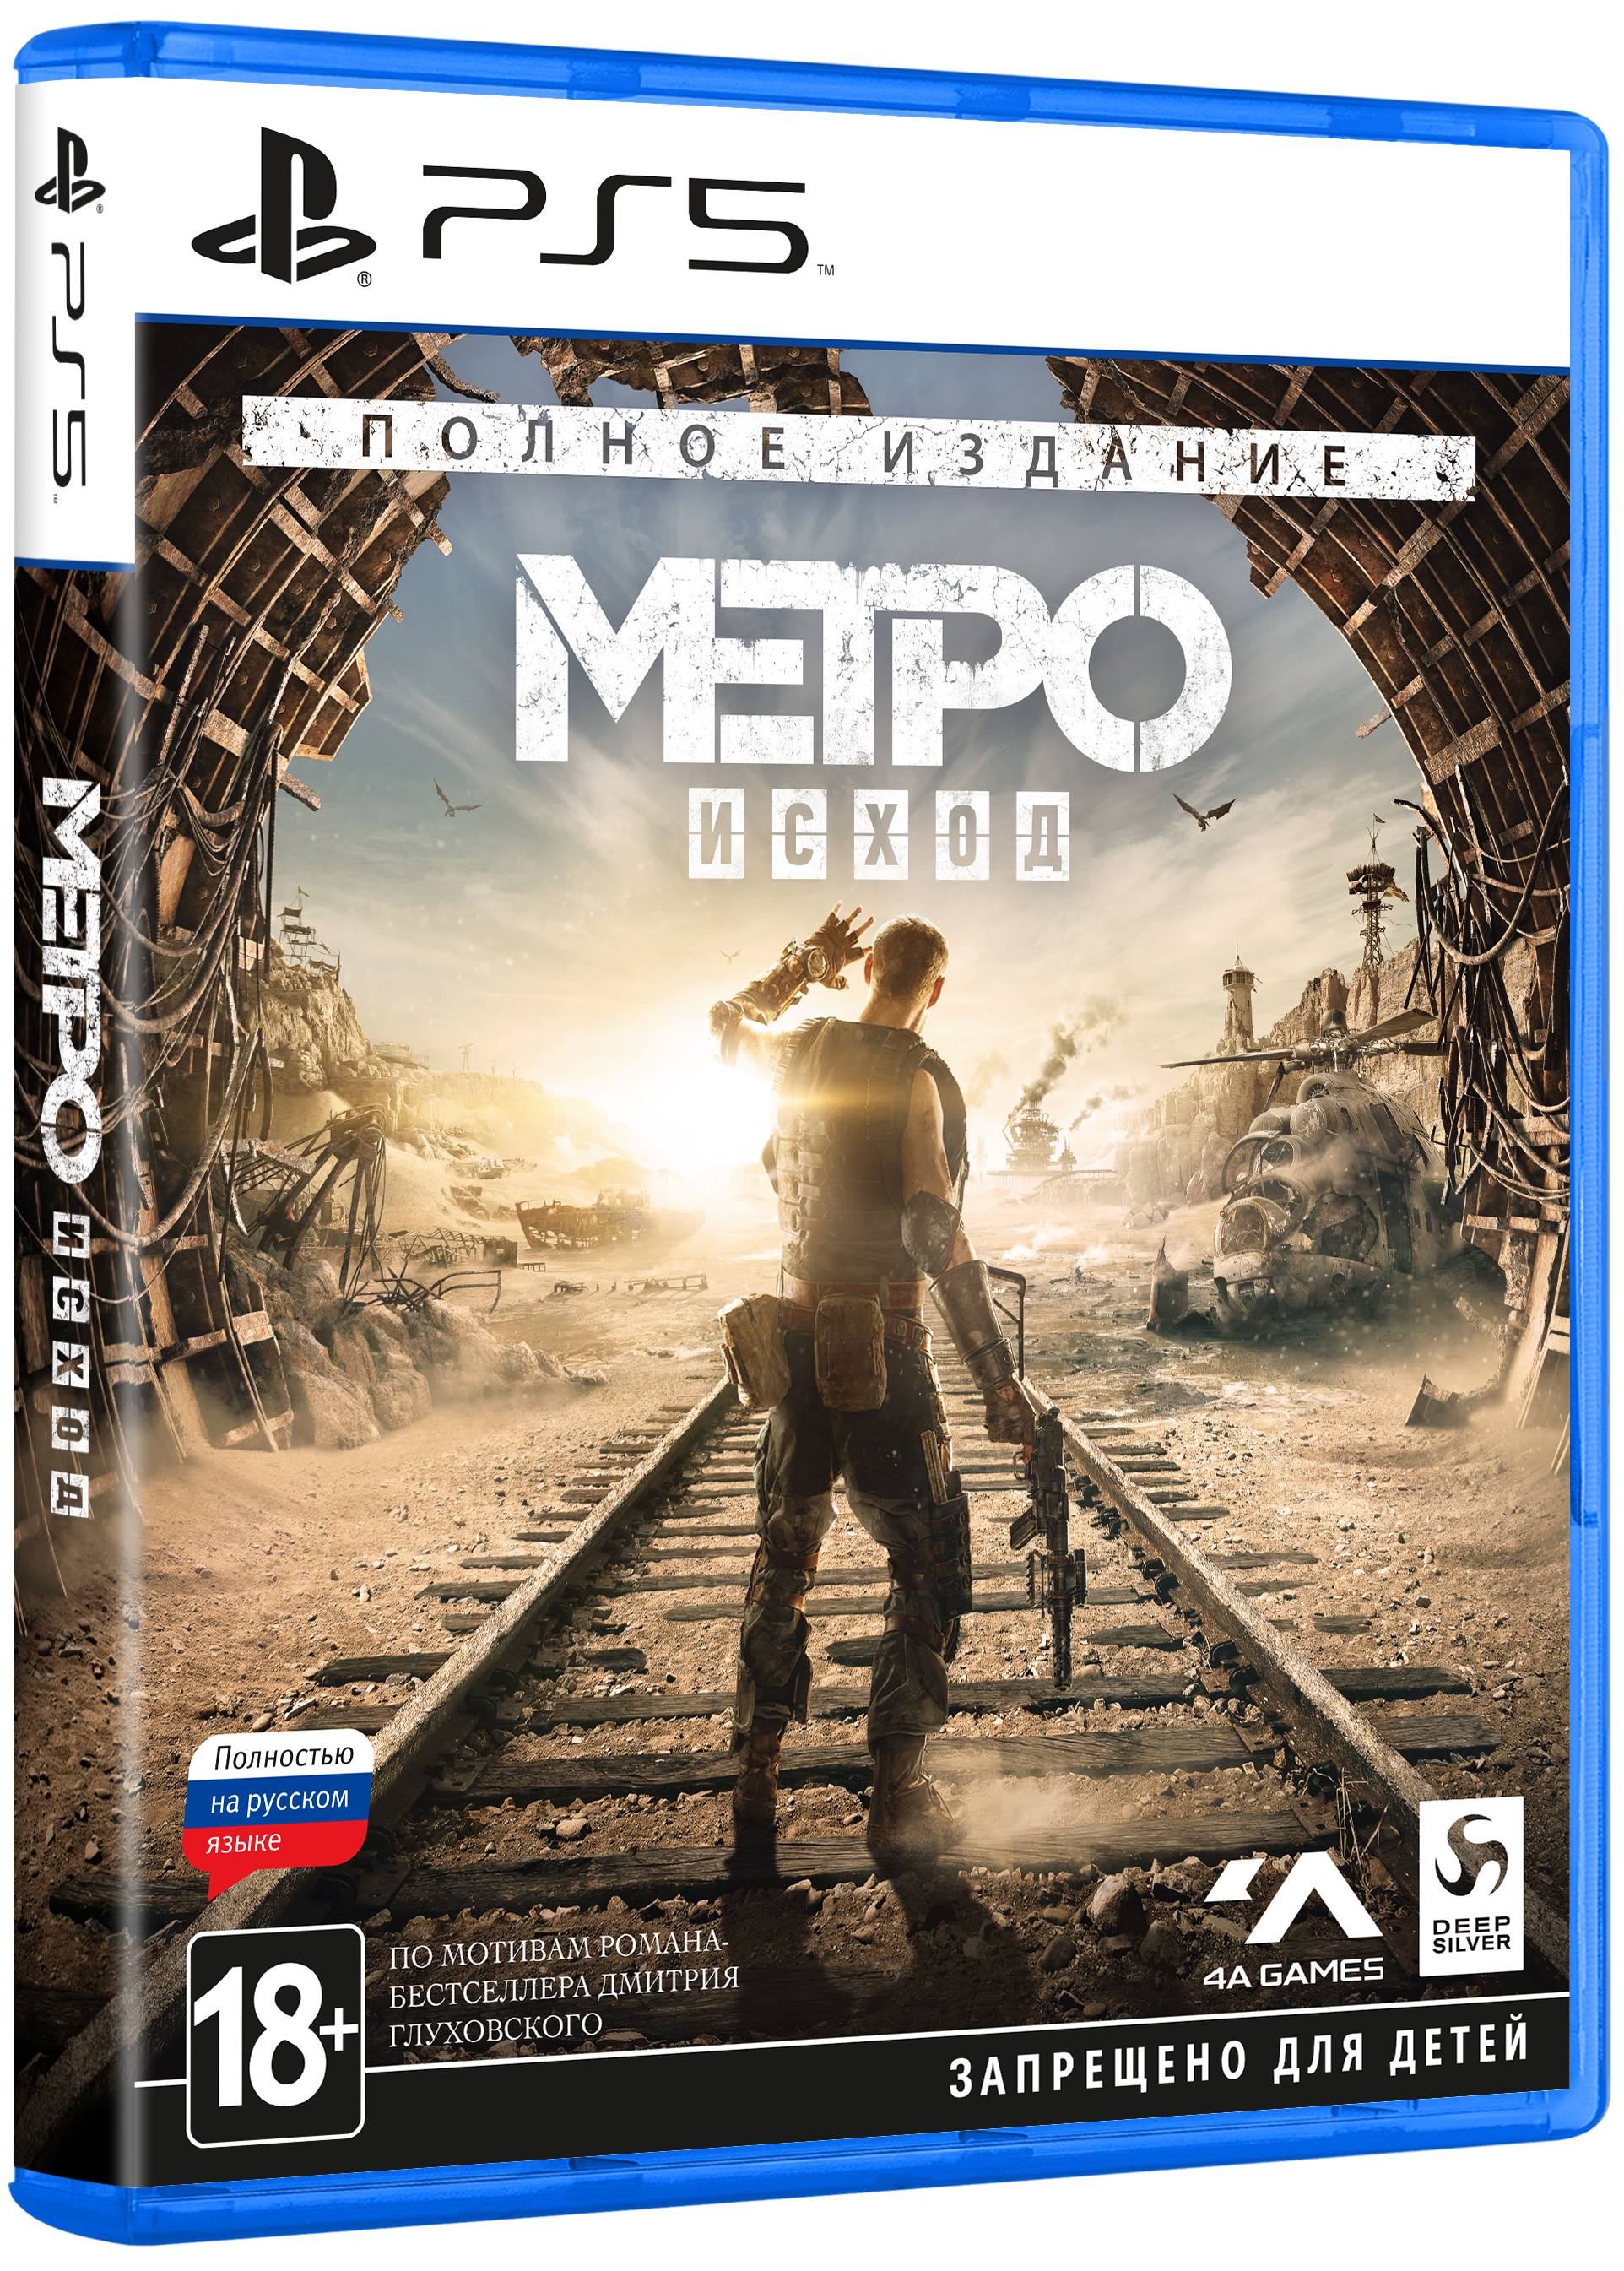 Метро исход на пс4. Метро исход диск Xbox one. Metro Exodus ps4. Metro Exodus Gold Edition ps4. Метро на пс 5